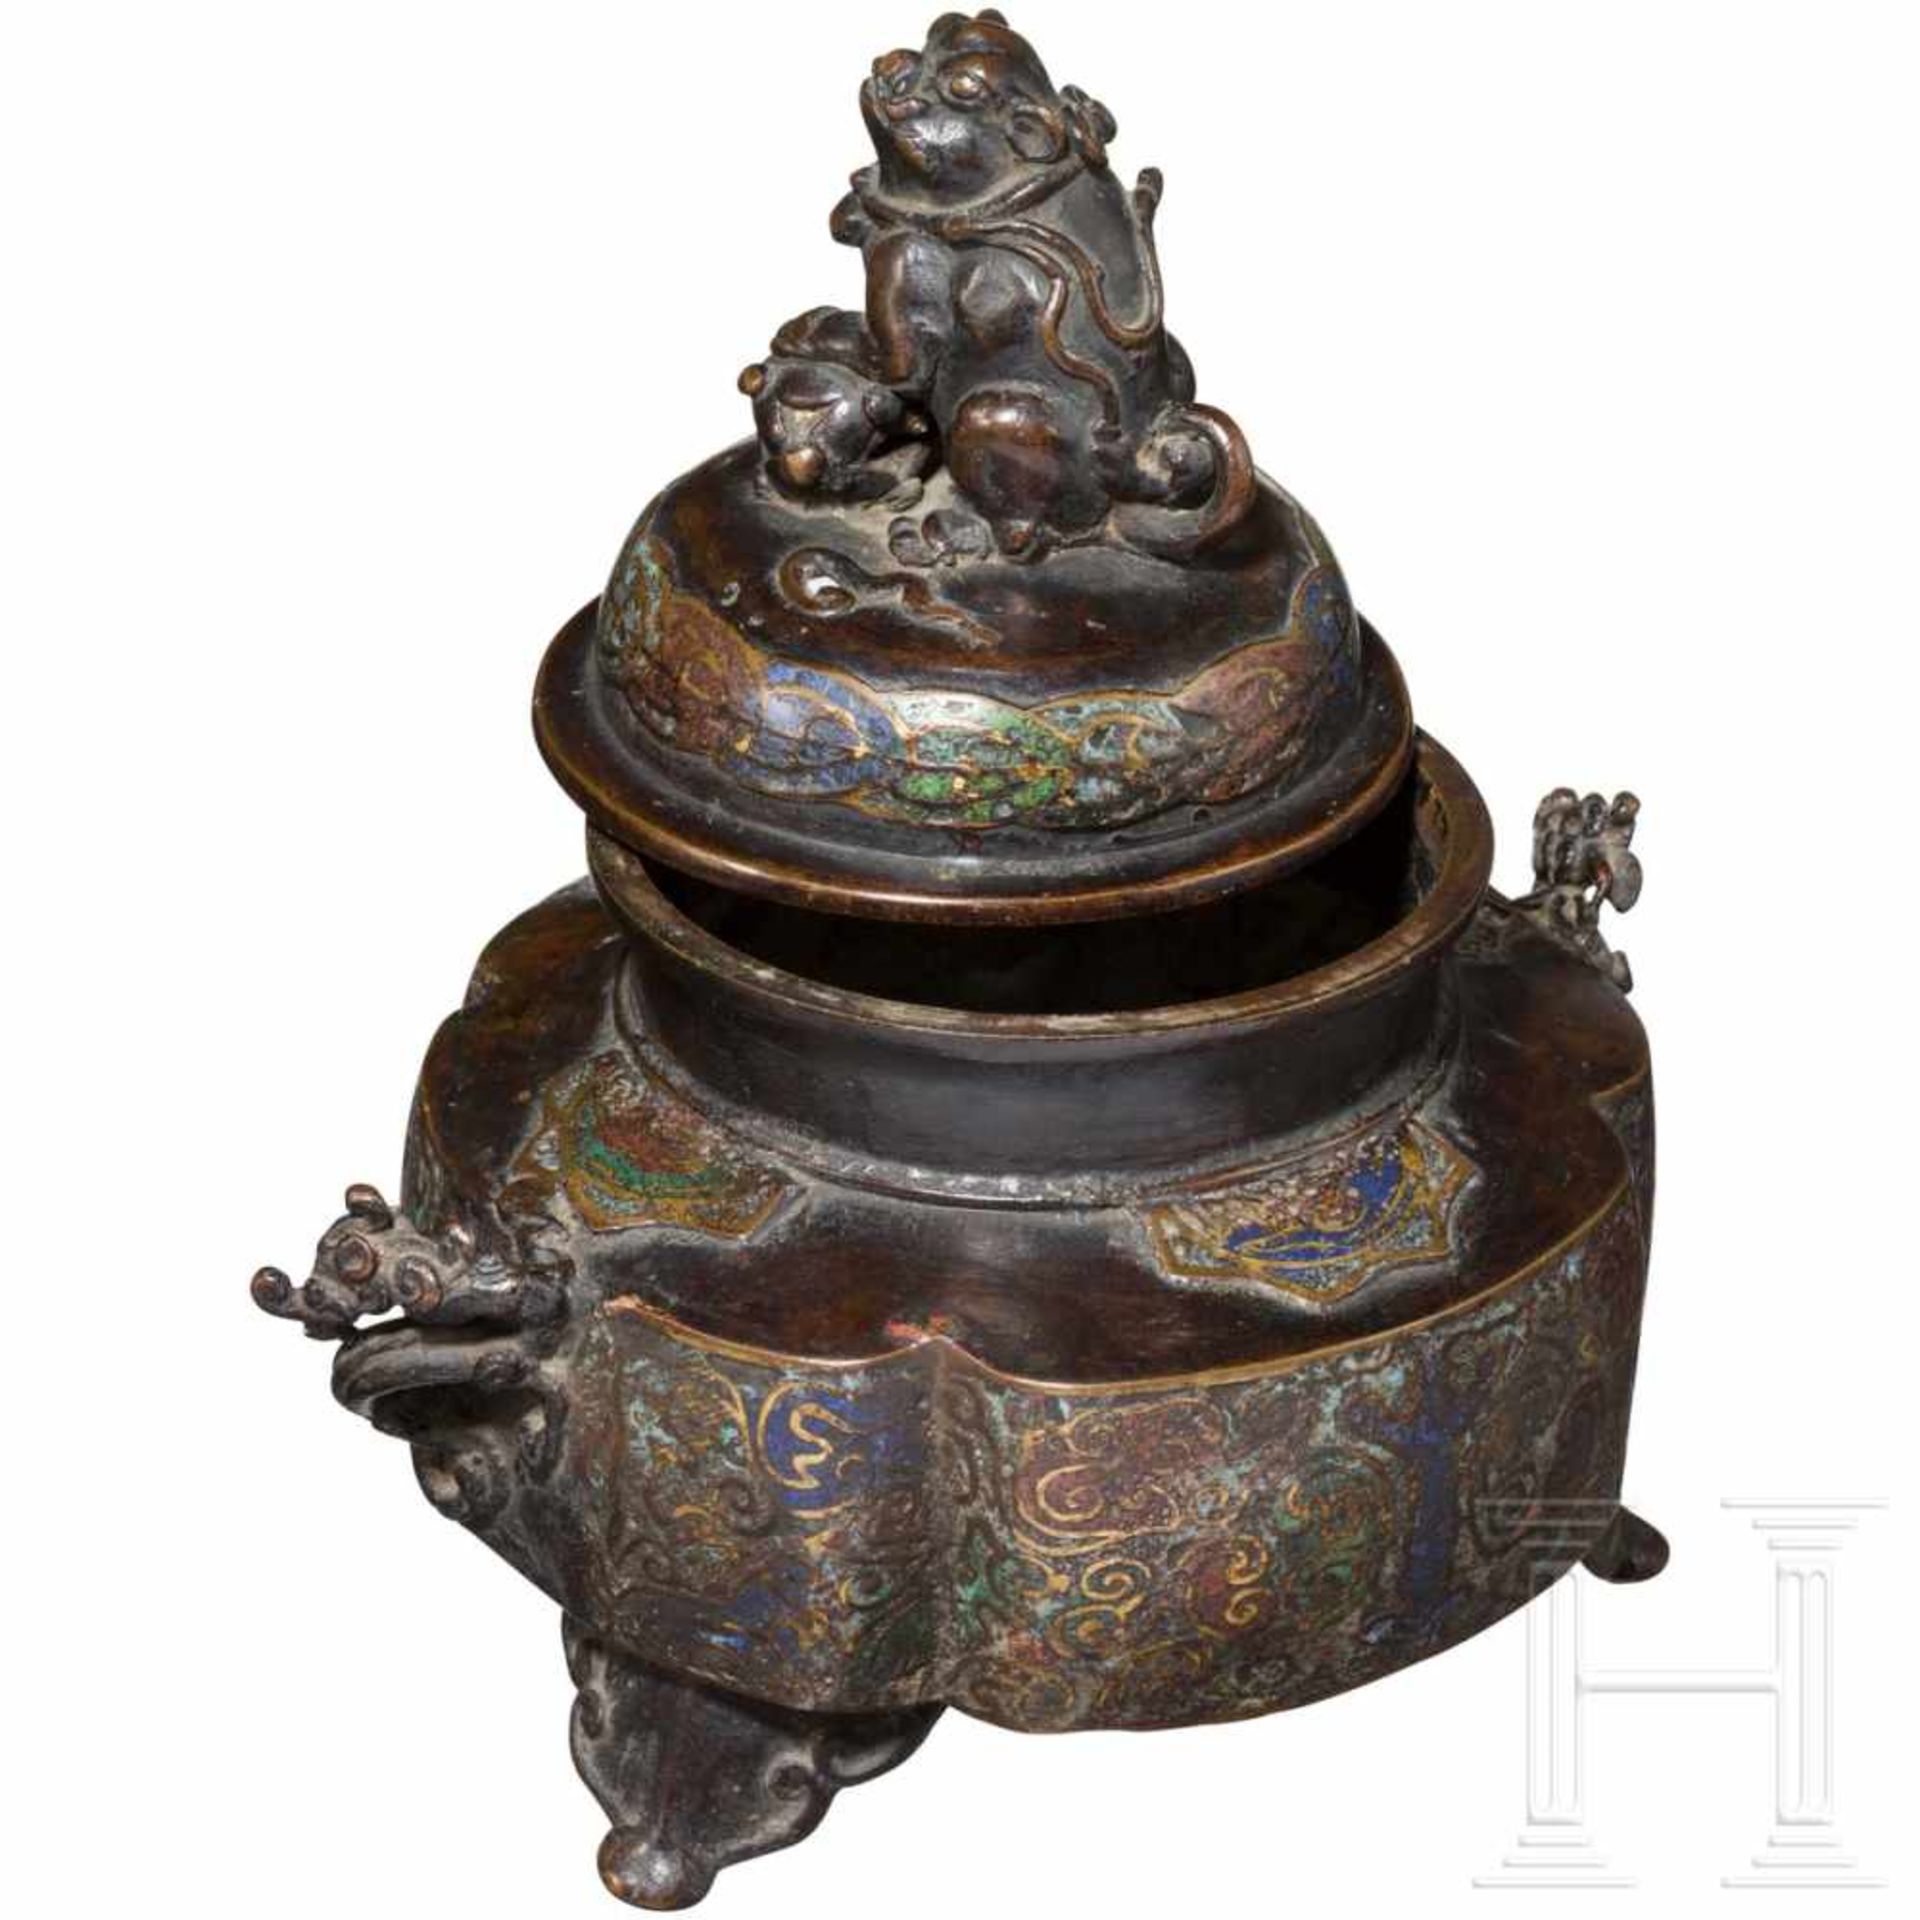 An enamelled bronze censer, China, 18th/19th centuryBronze mit schöner Alterspatina. Vierpassig - Bild 3 aus 3